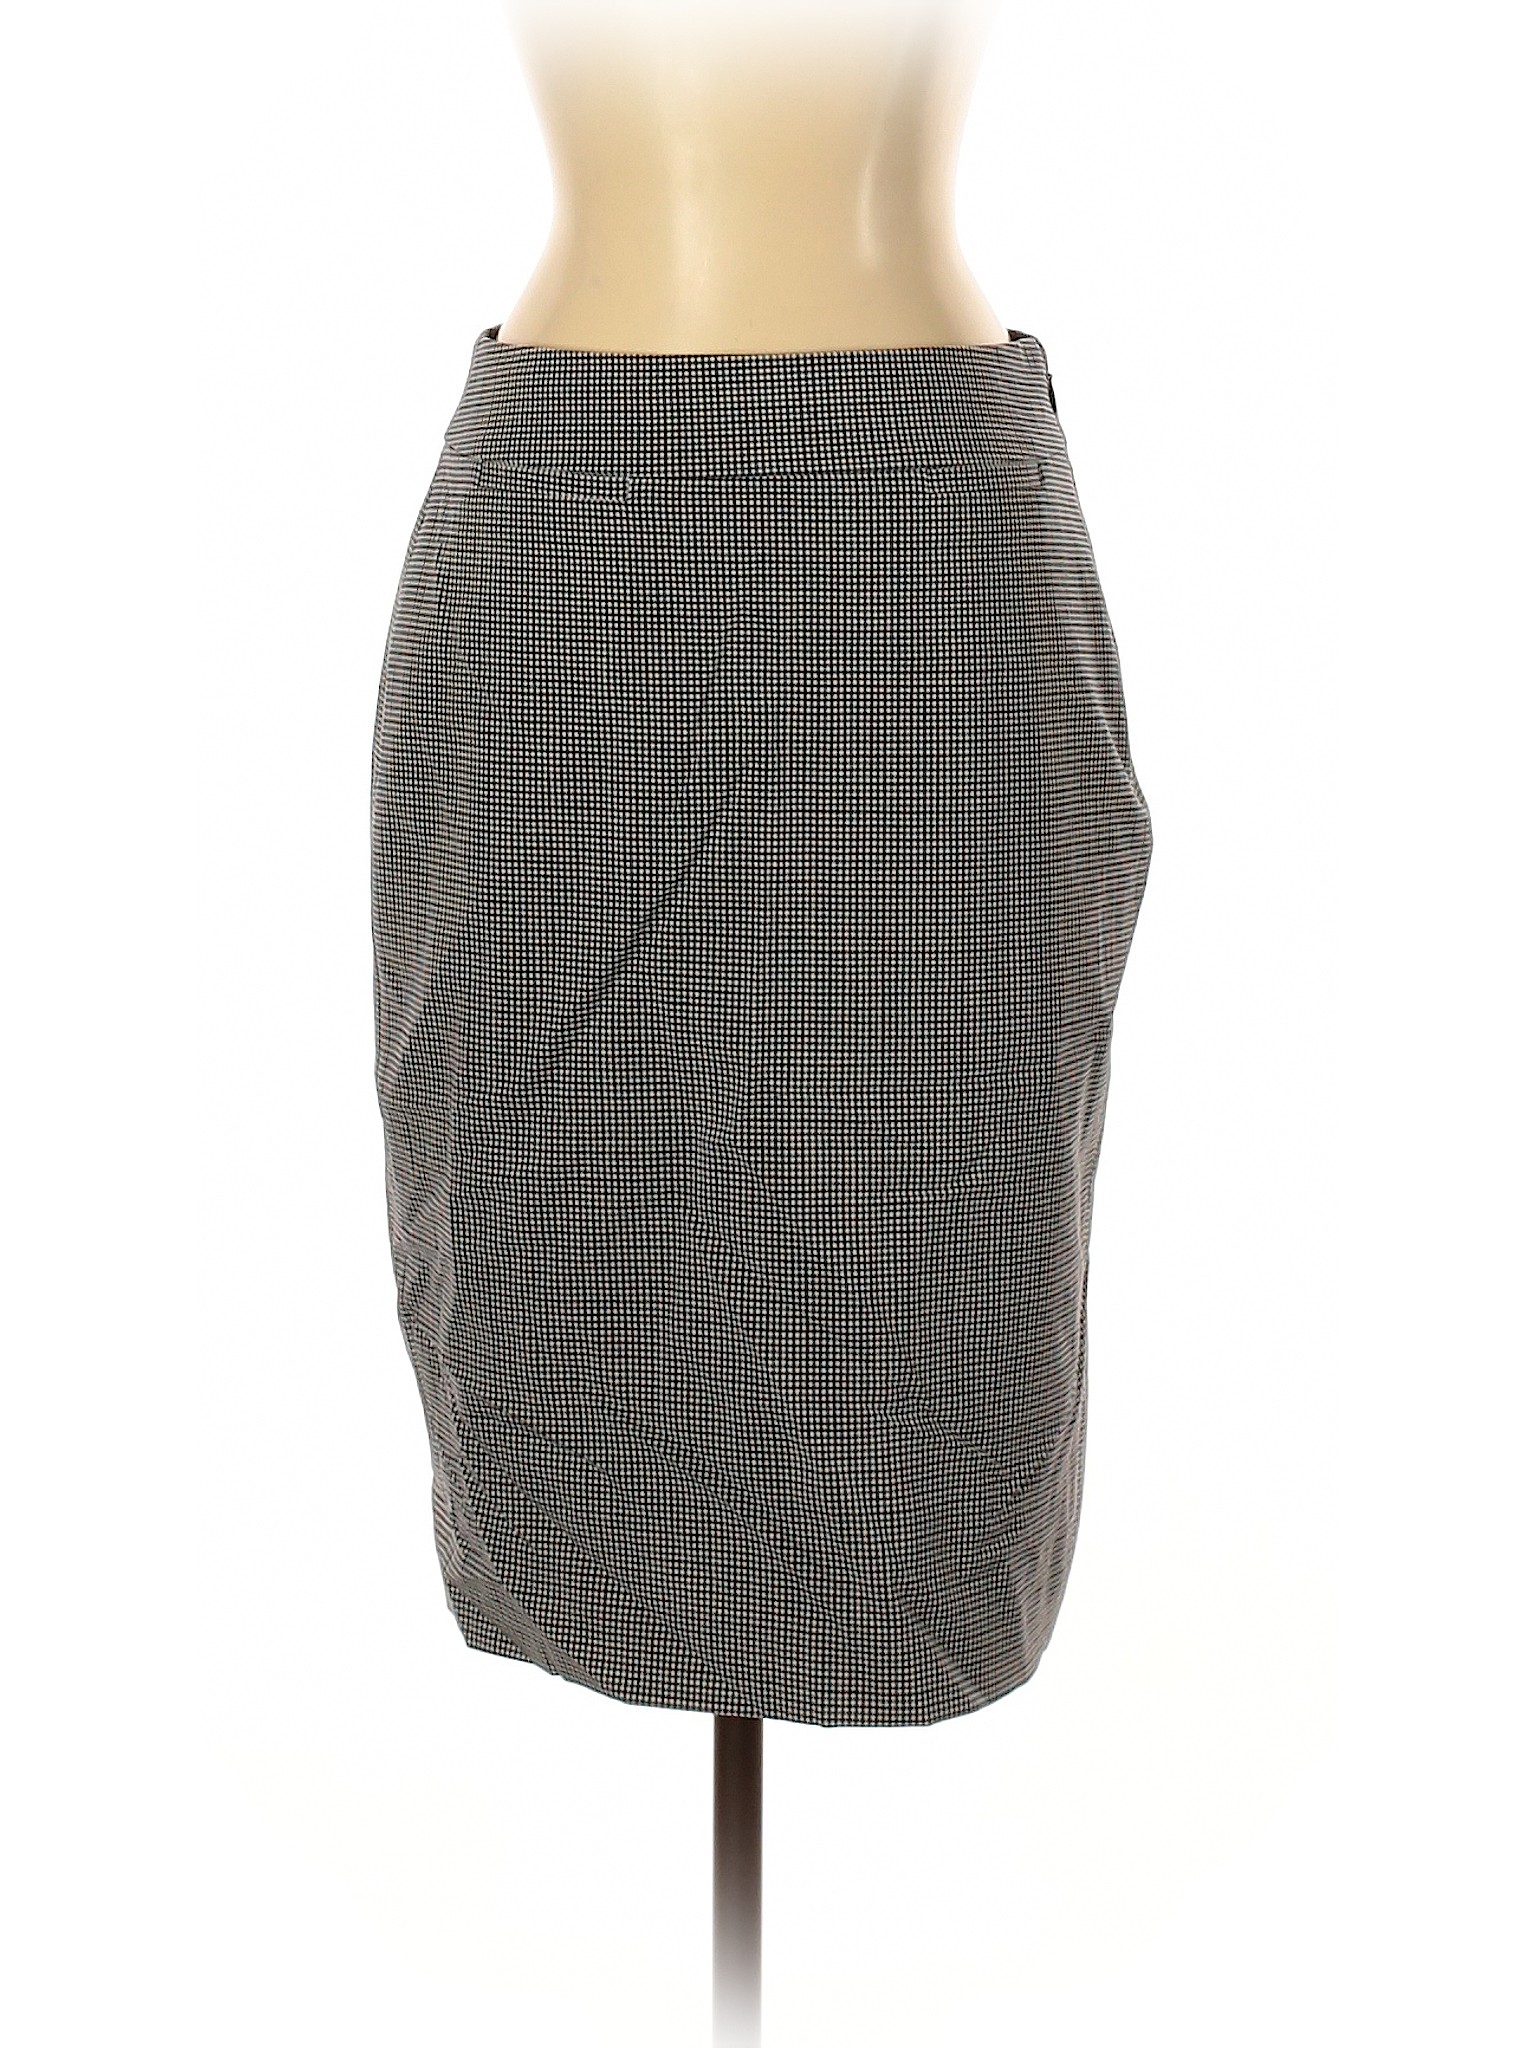 Banana Republic Women Gray Wool Skirt 0 | eBay